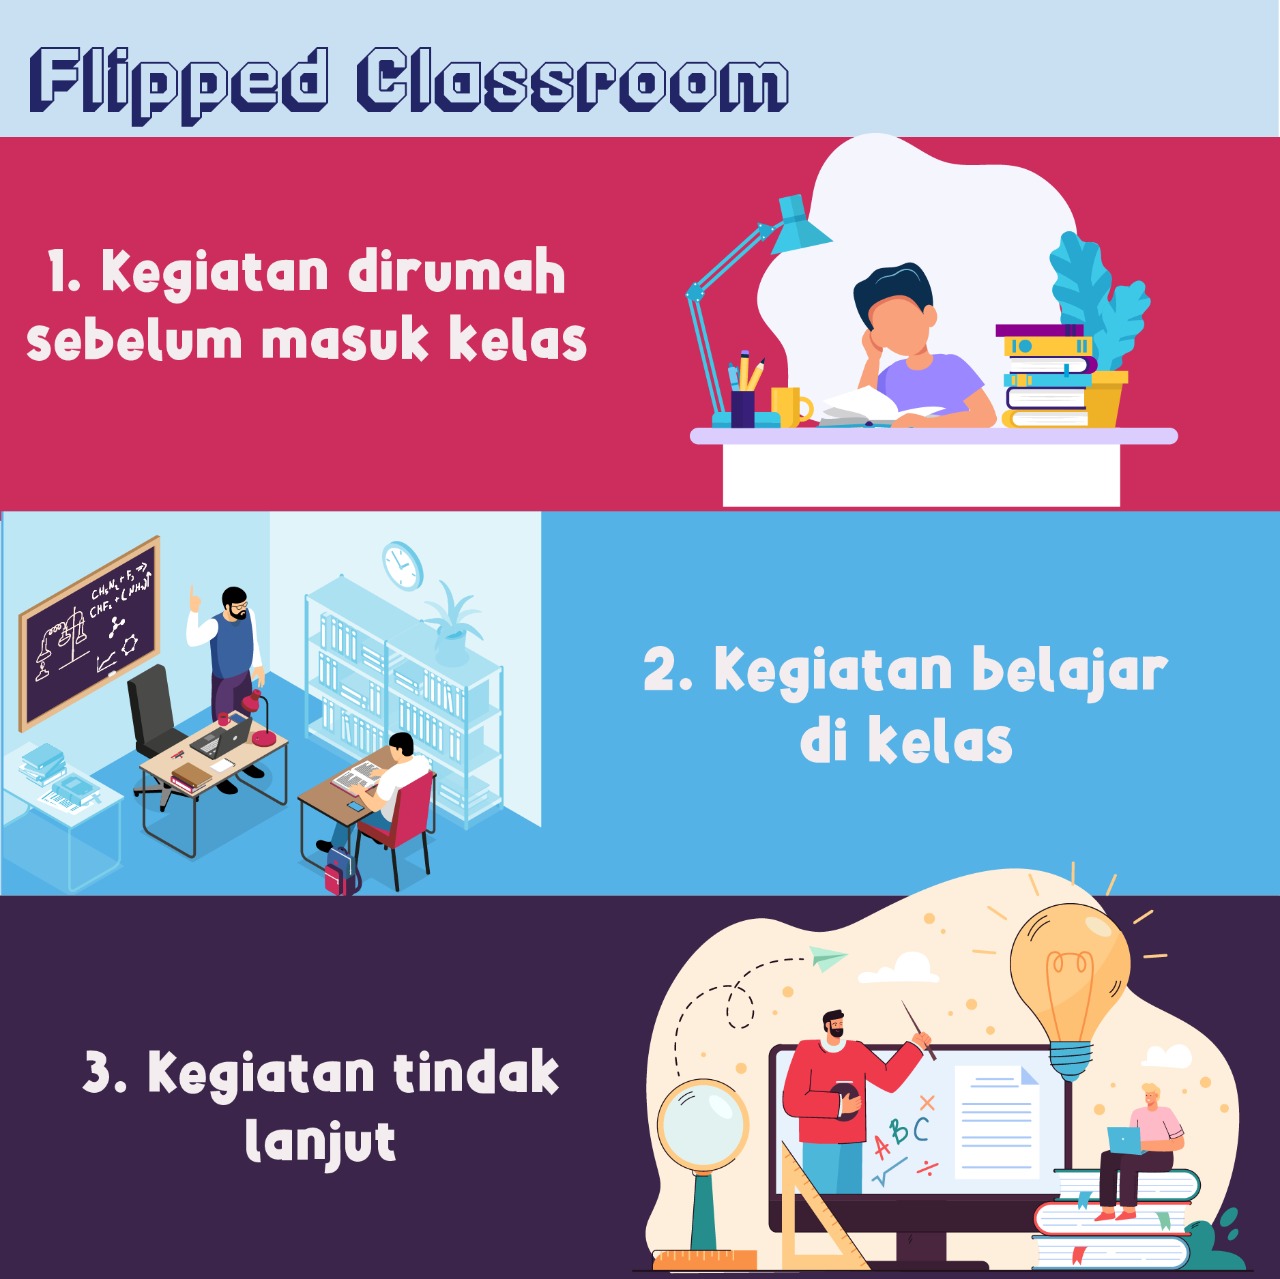 Flipped Classroom sebagai Solusi Pembelajaran Tatap Muka Bergilir Pasca